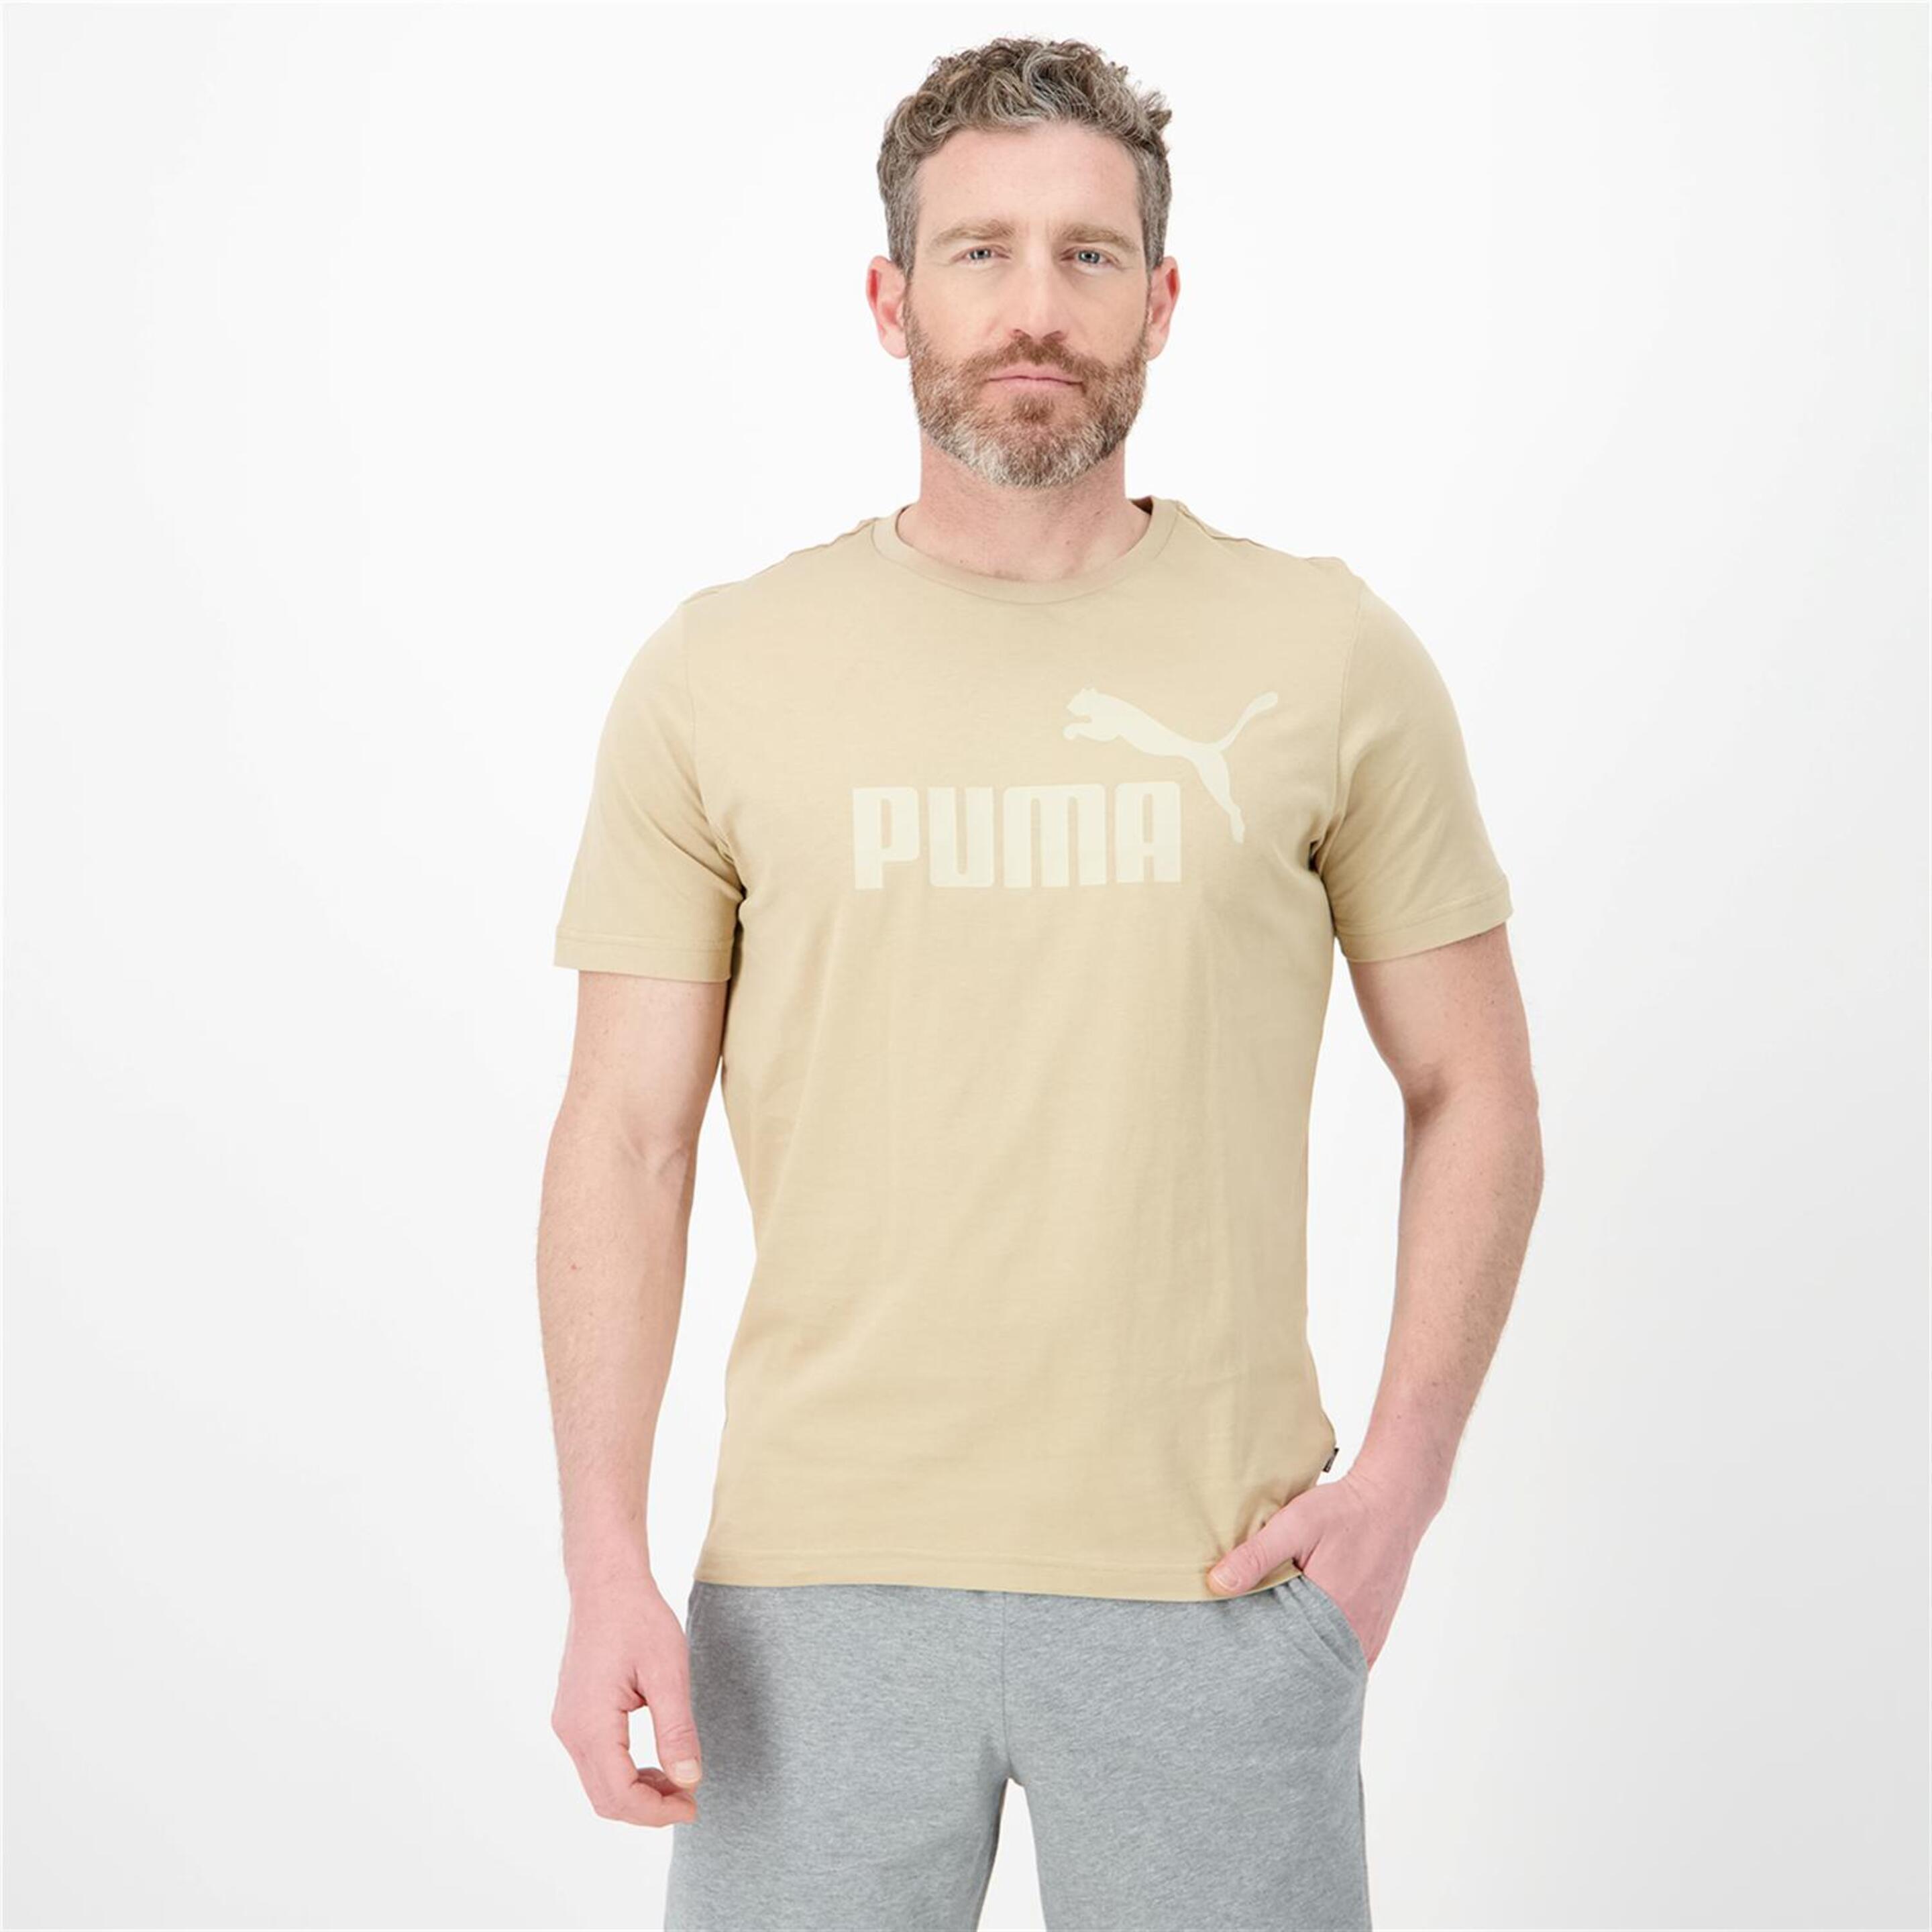 Puma Essential Logo - marron - Camiseta Hombre